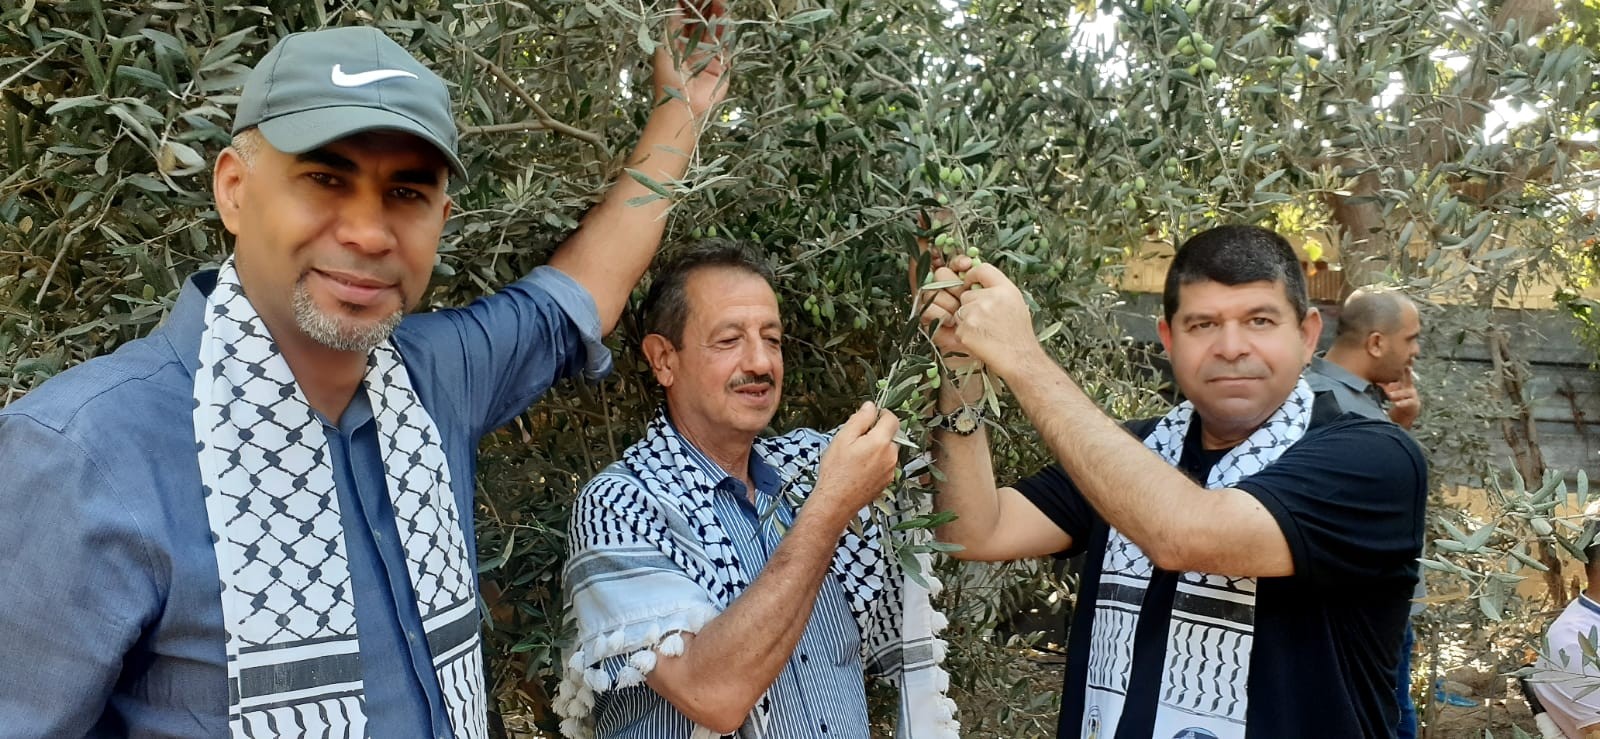 التجمع الفلسطيني للوطن و الشتات يساعد المزارعين بقطف الزيتون شمال غزة  1.jpg